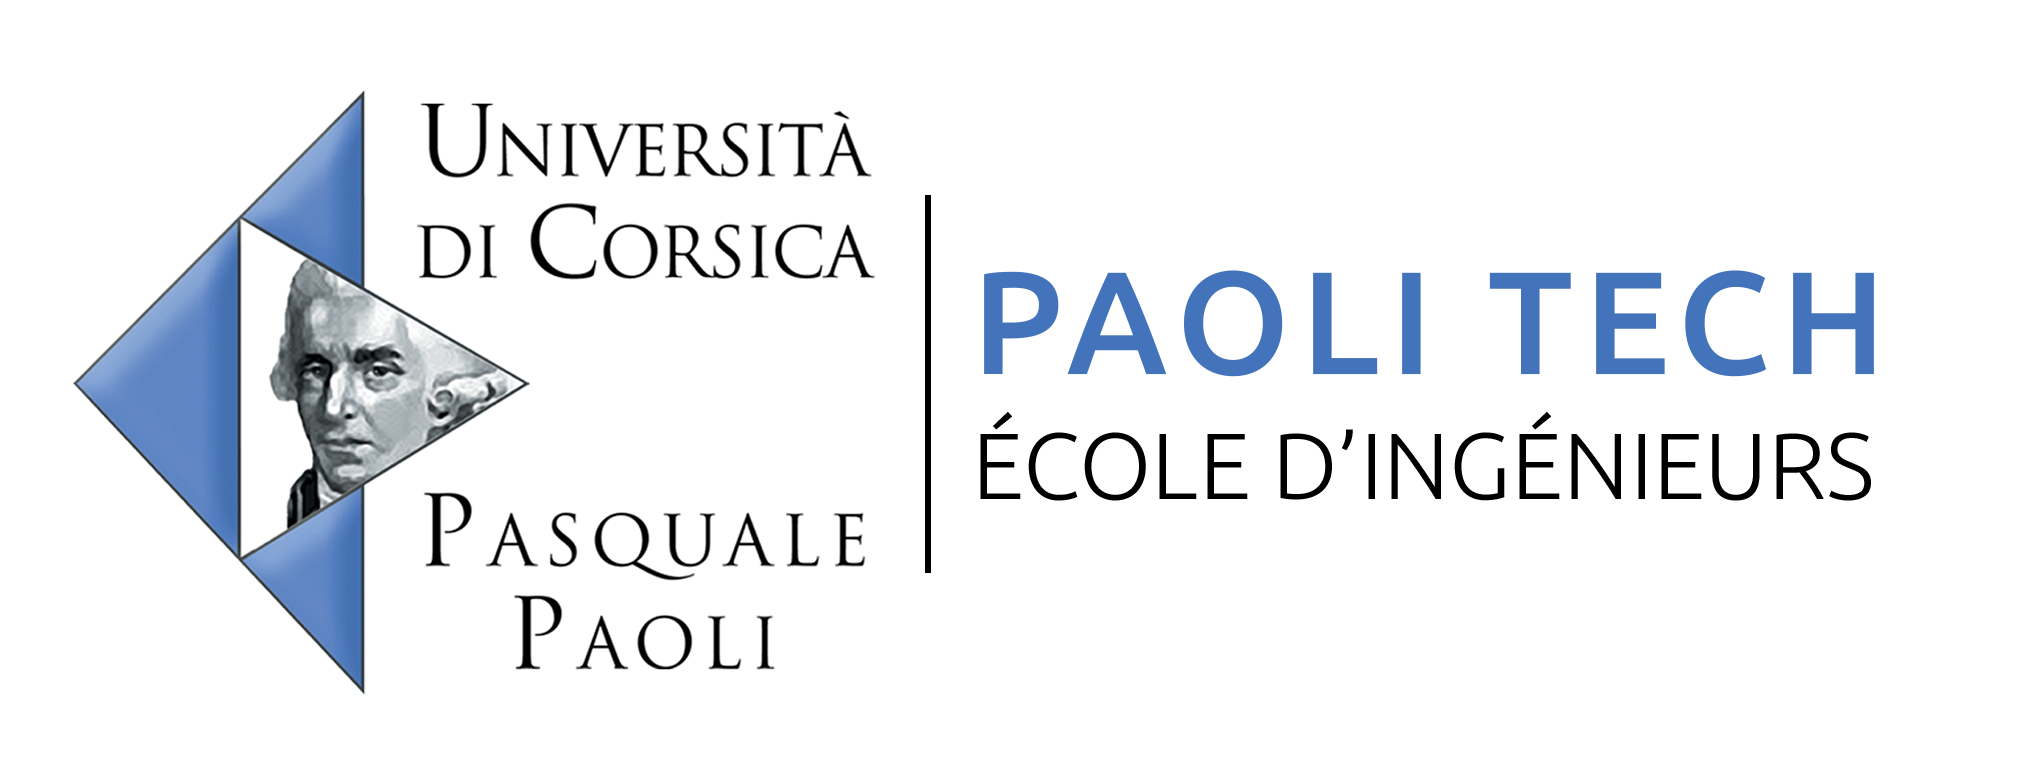 Paoli Tech Corse